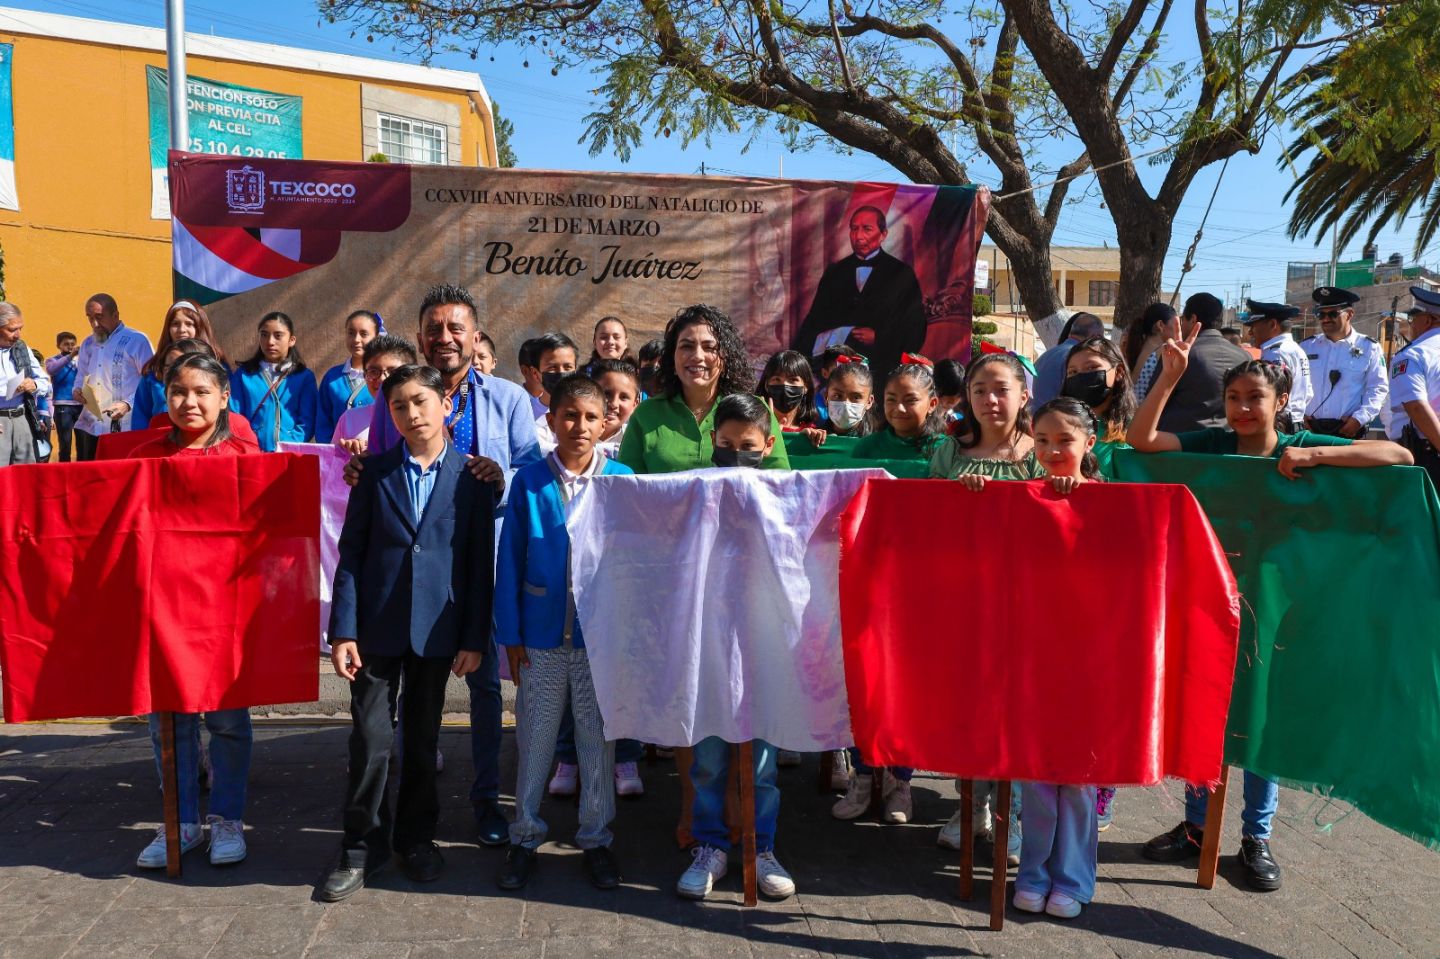 Conmemoran en Texcoco el CCXVIII aniversario del natalicio de Benito Juárez 